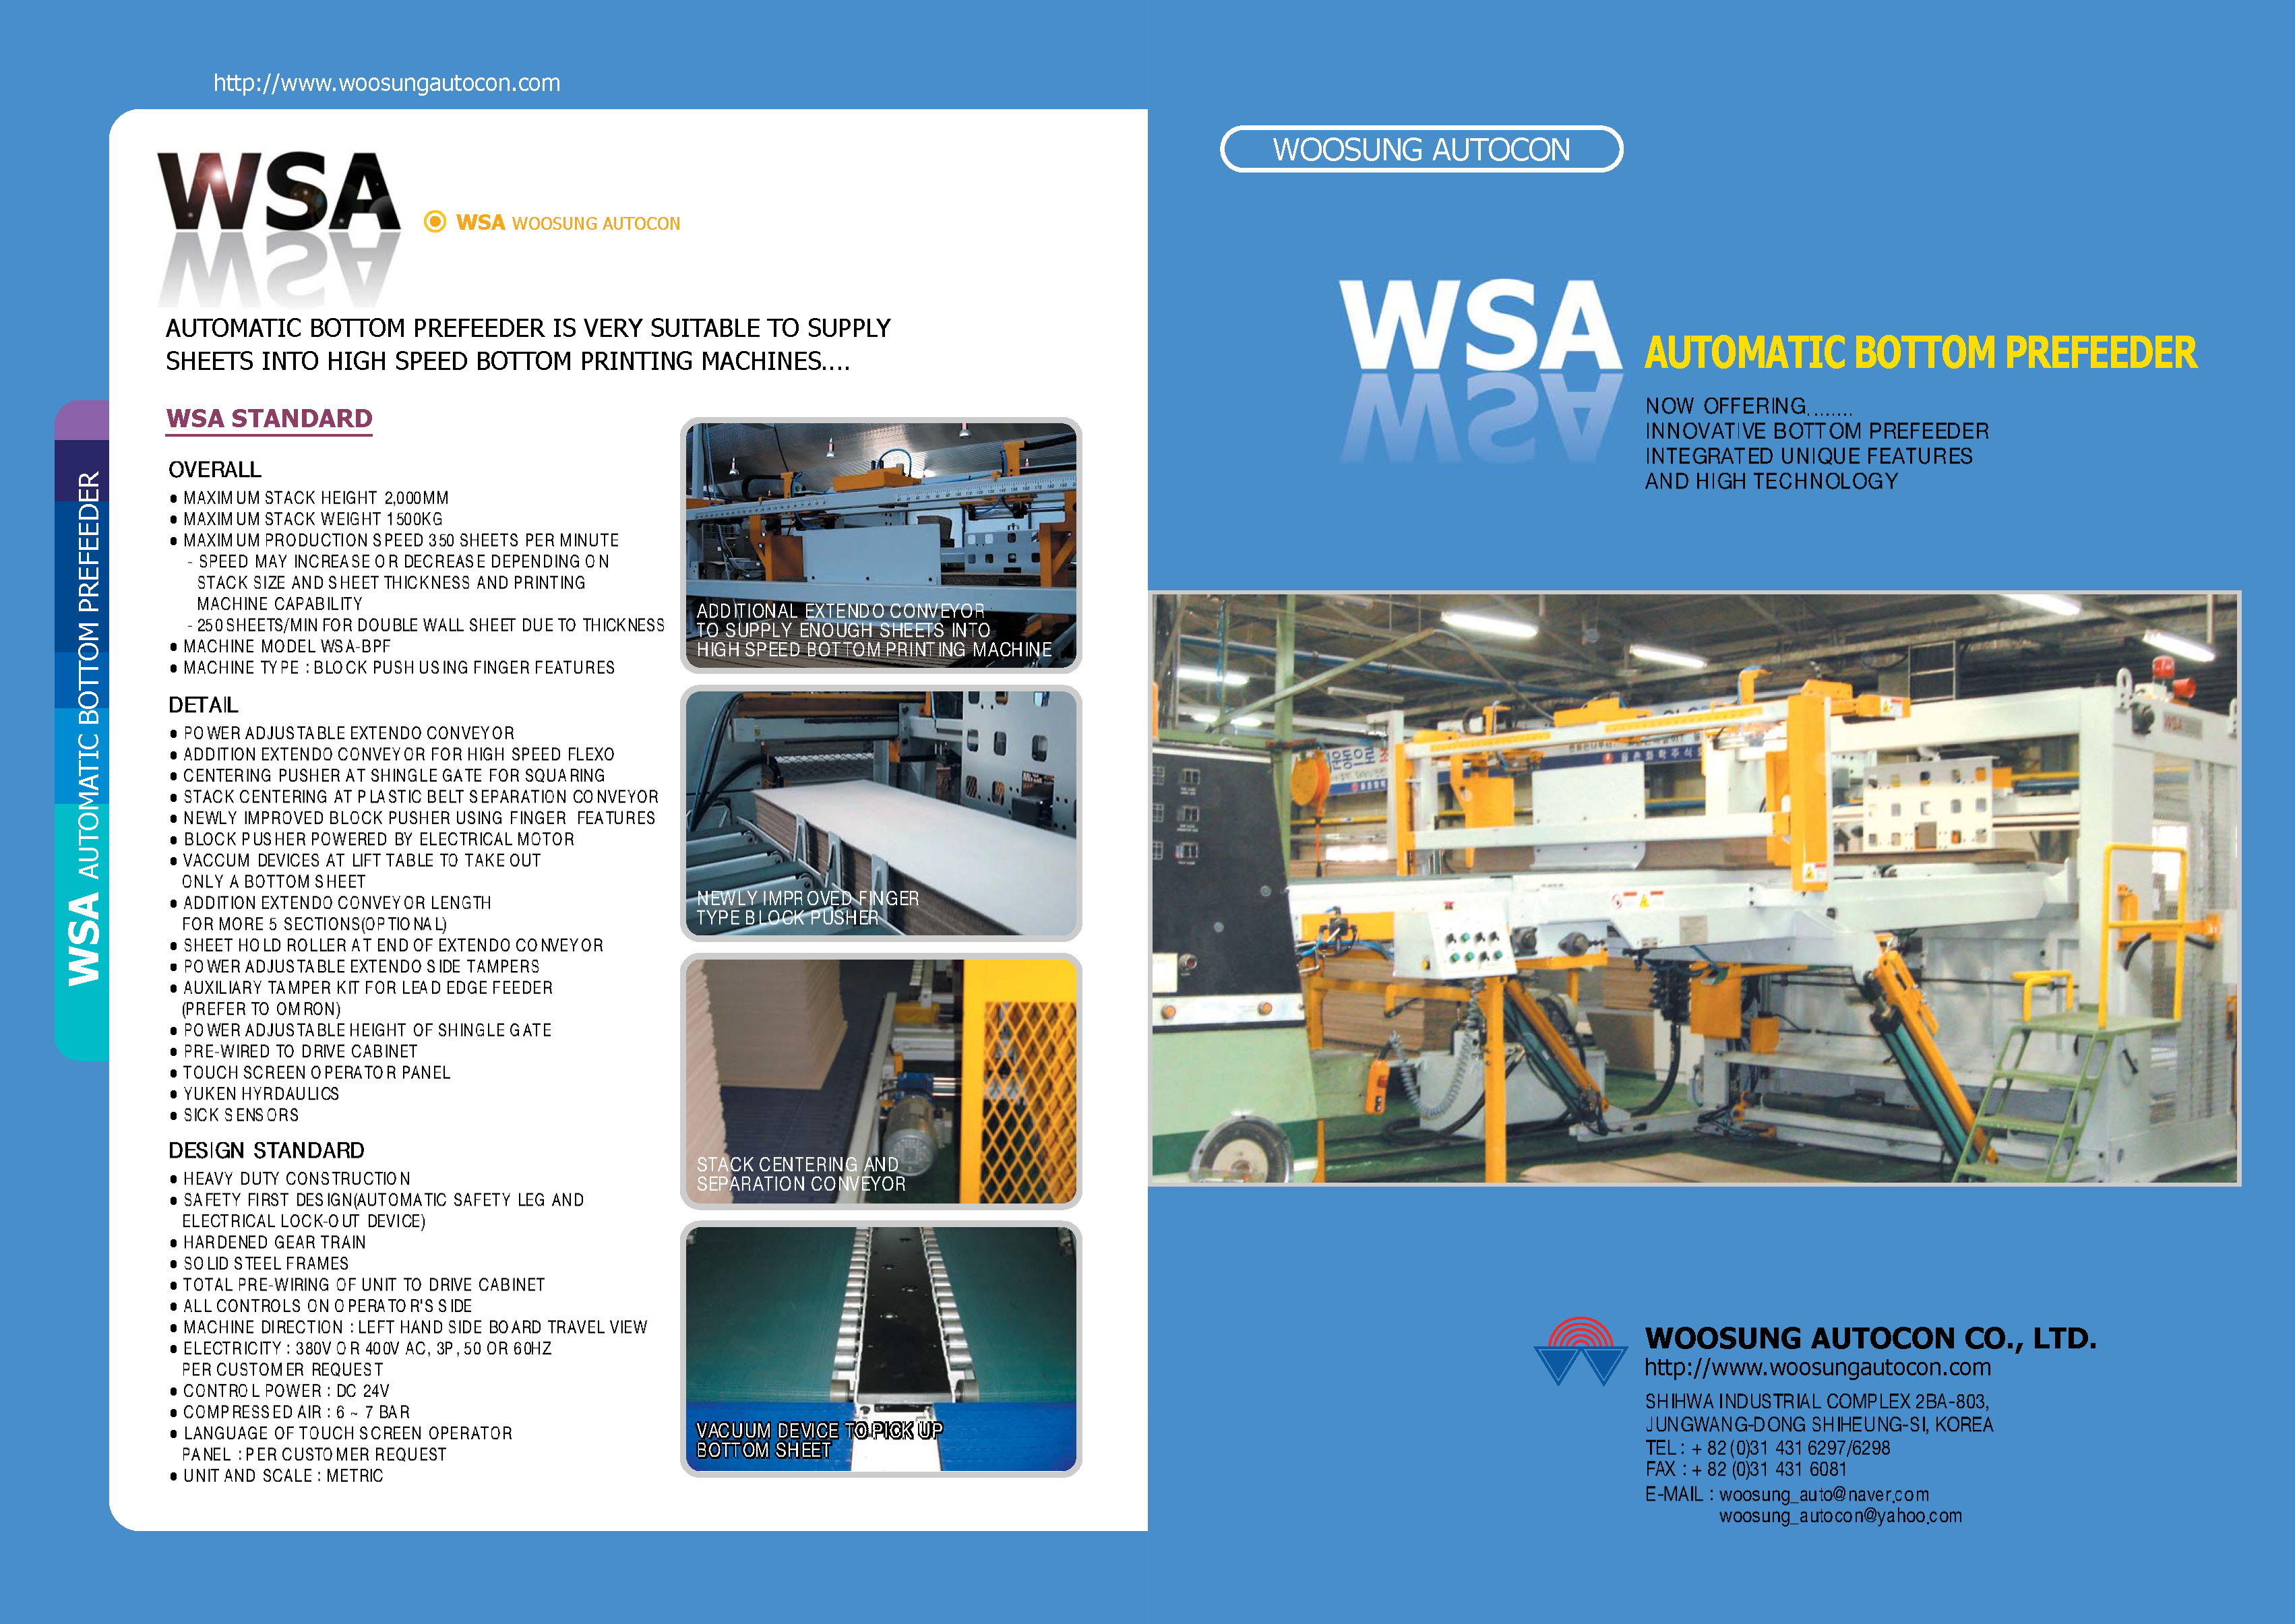 Obtendrá información ampliada sobre el WSA Pre-Alimentadores de Impresión por Abajo en el folleto WSA Pre-Alimentador Automático de Impresión por Abajo.